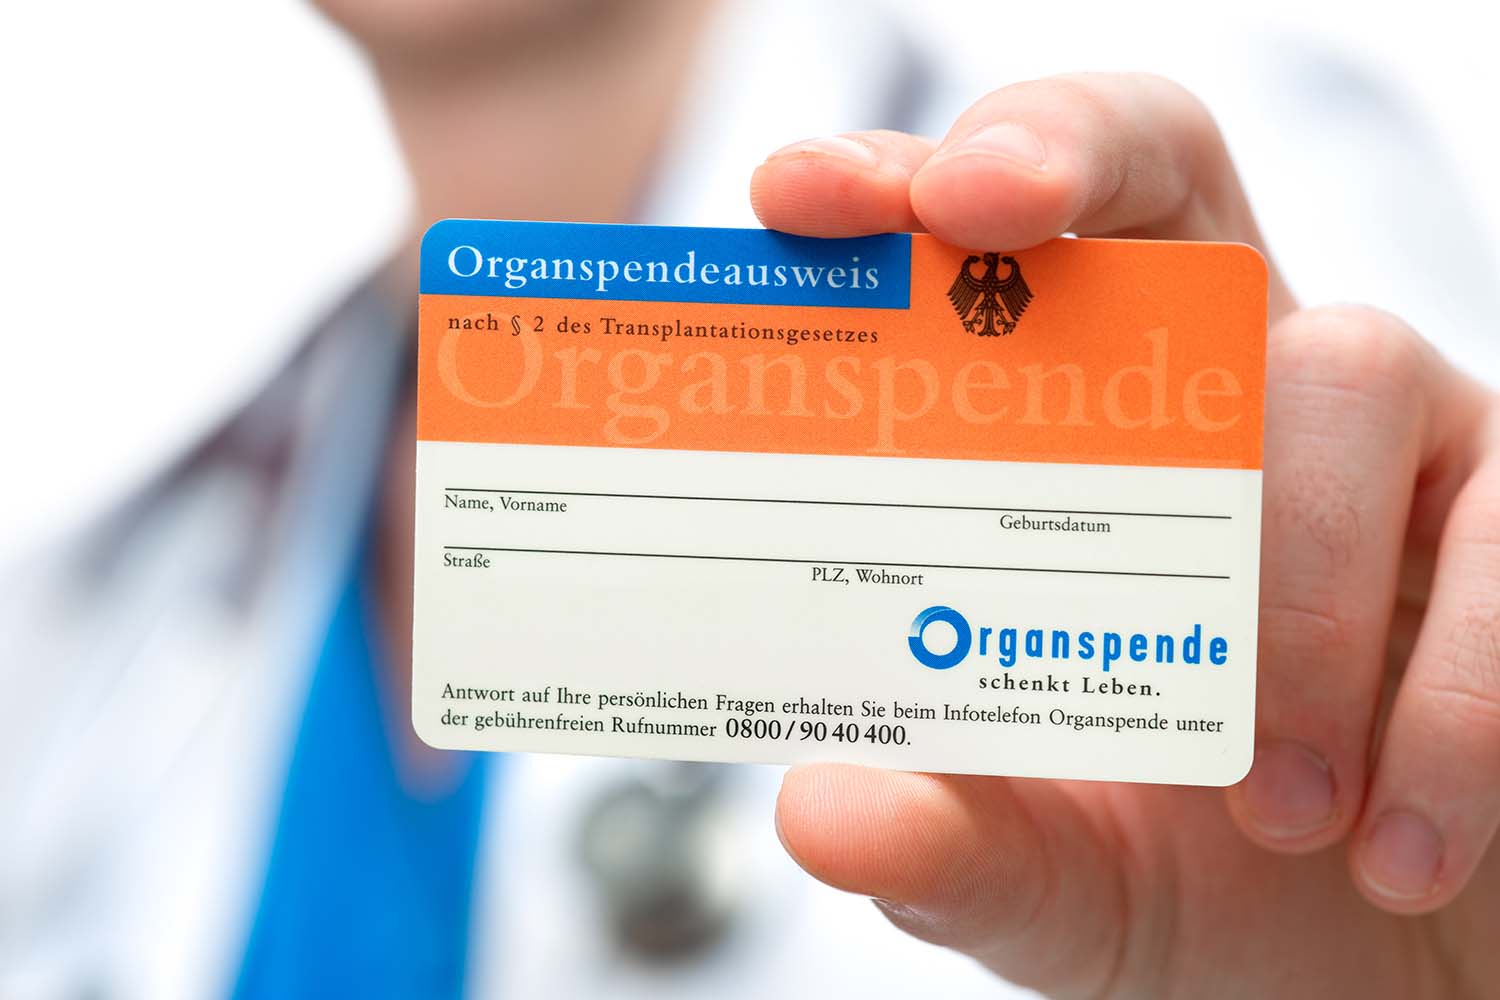 In Deutschland werden weit weniger Organe gespendet als von Todkranken benötigt. Ein neuer Vorschlag zielt darauf ab, dass sich alle erklären sollen - anderenfalls soll sich dies im Geldbeutel bemerkbar machen.